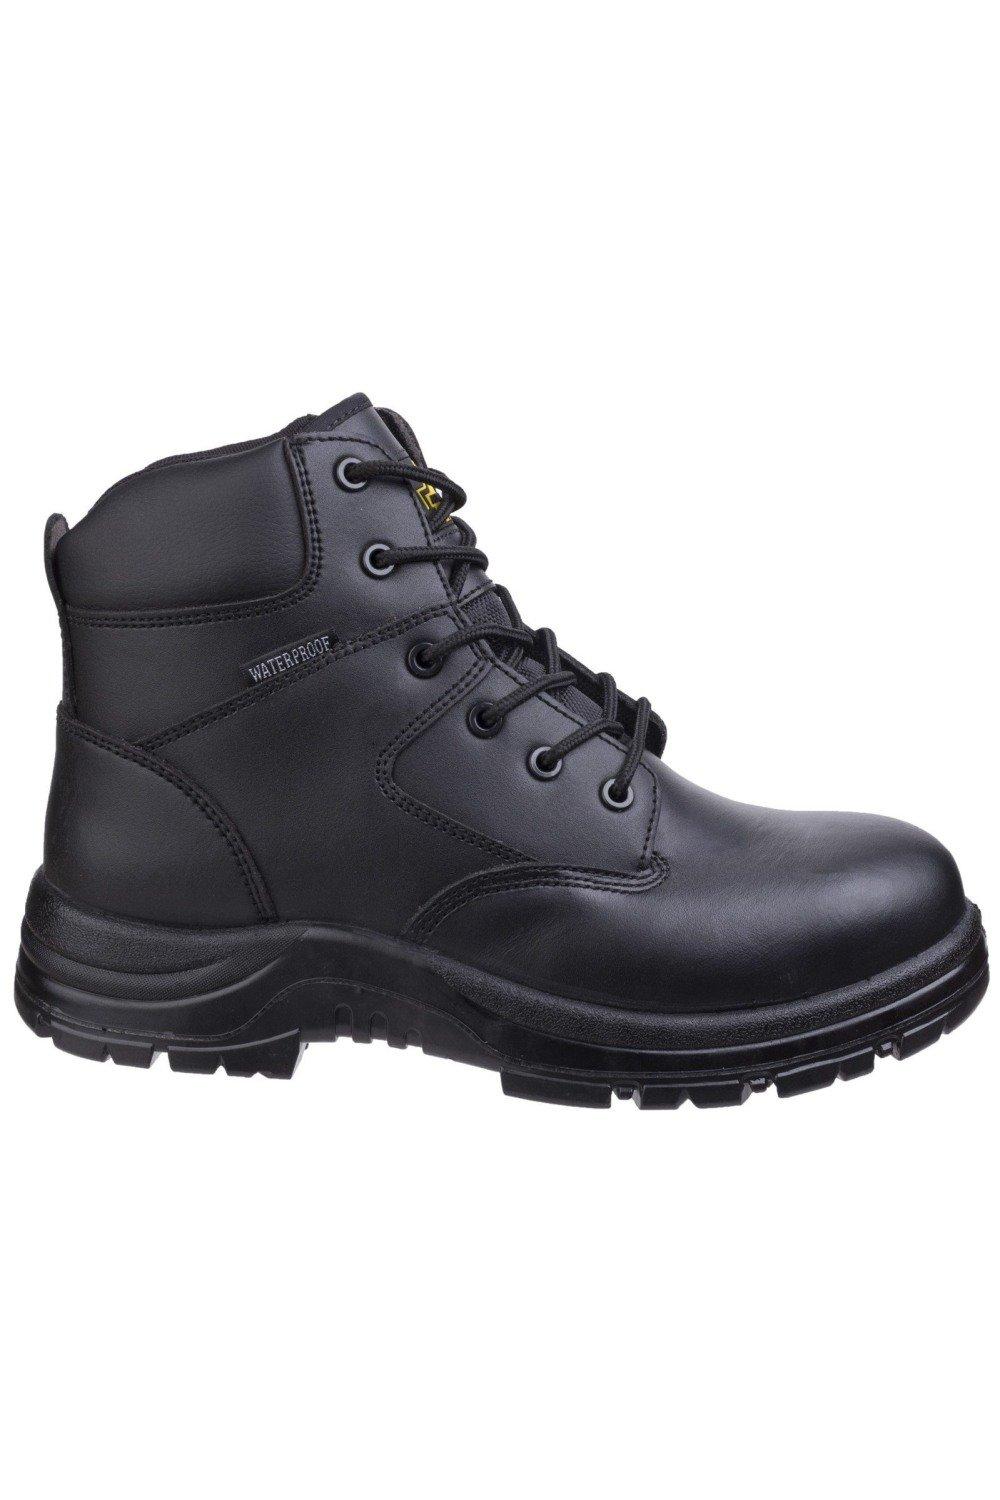 цена Защитные ботинки FS006C Amblers, черный